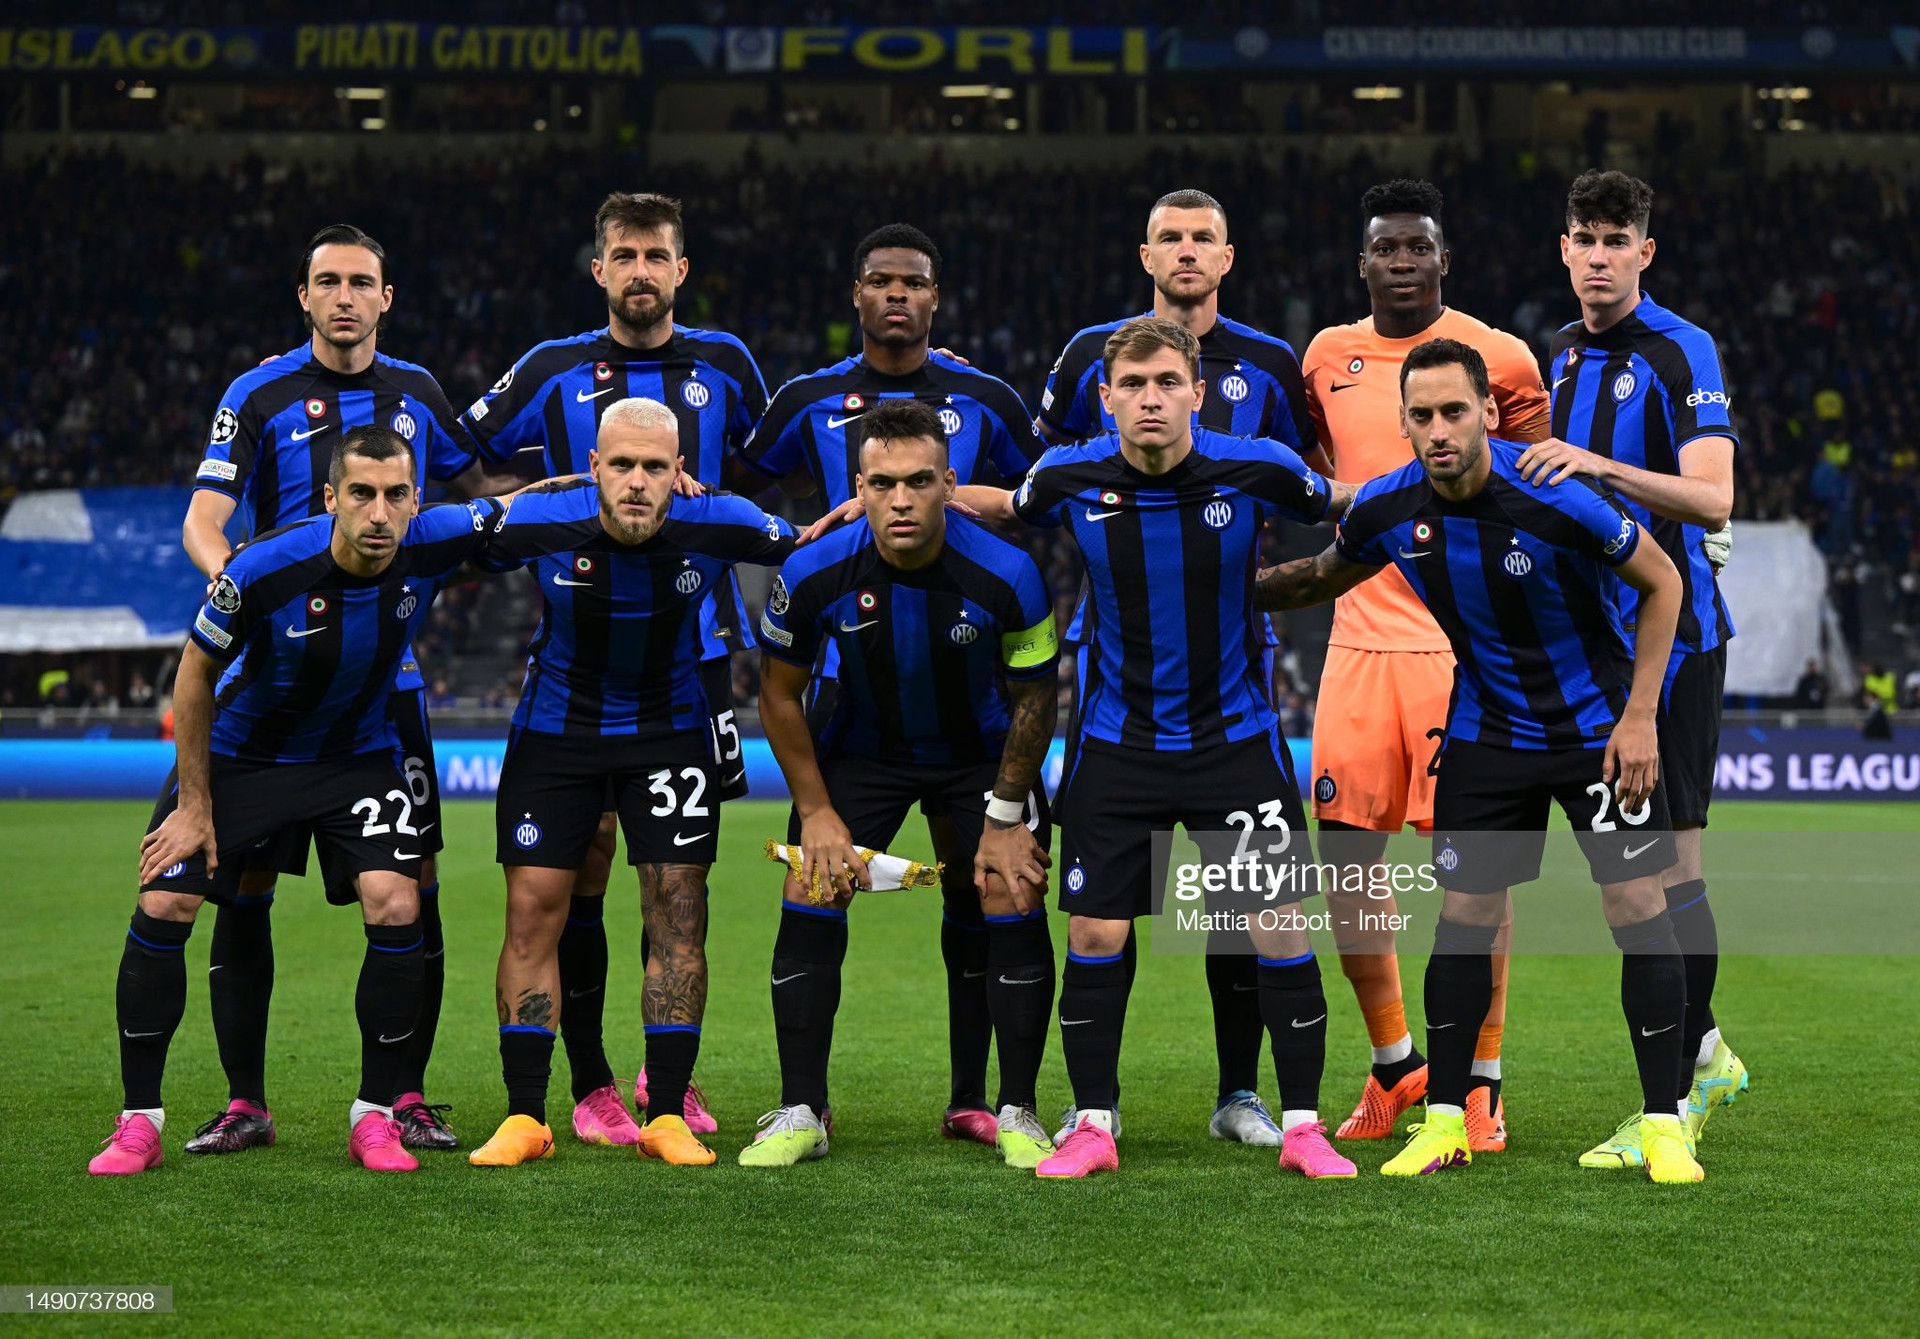 Đội hình và danh sách các cầu thủ Inter Milan mùa giải mới 